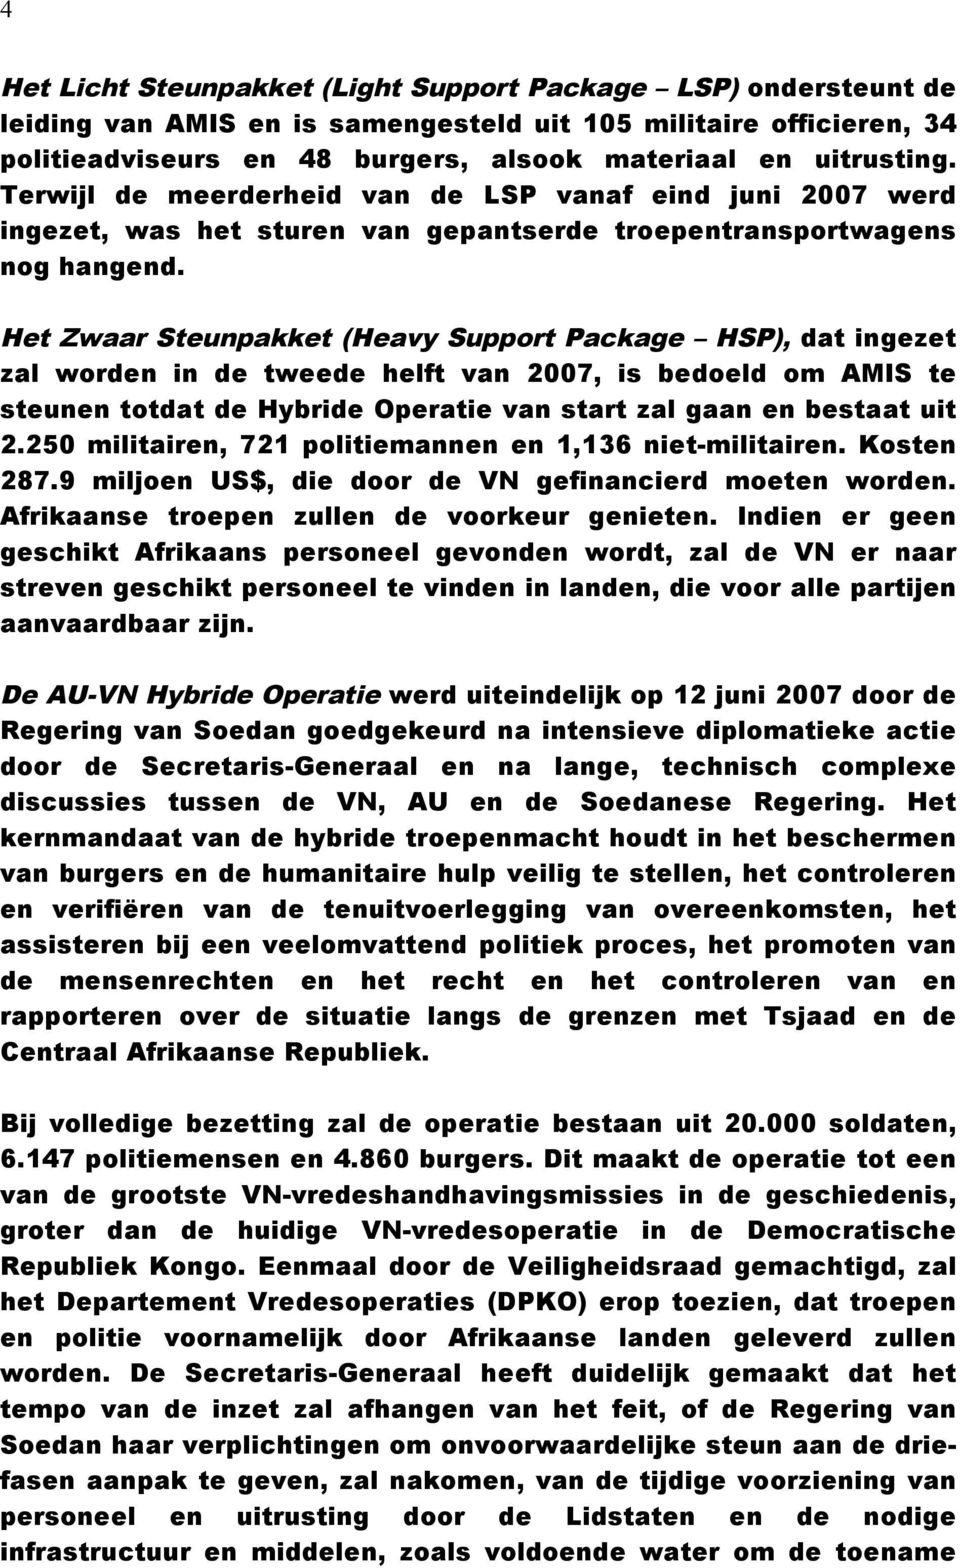 Het Zwaar Steunpakket (Heavy Support Package HSP), dat ingezet zal worden in de tweede helft van 2007, is bedoeld om AMIS te steunen totdat de Hybride Operatie van start zal gaan en bestaat uit 2.